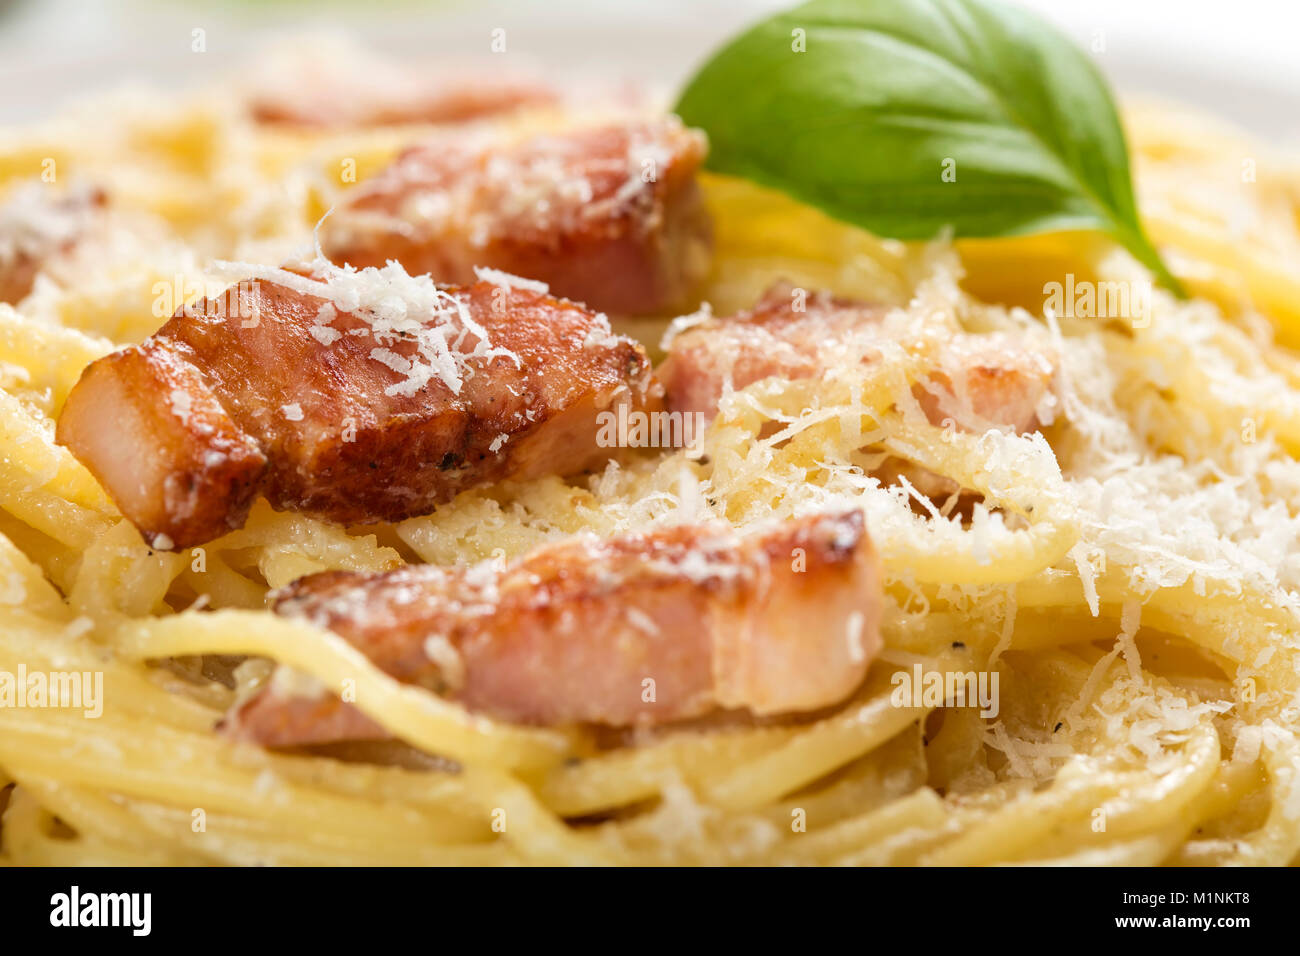 La plaque avec les pâtes italiennes traditionnelles Carbonara avec du parmesan râpé et de basilic Banque D'Images